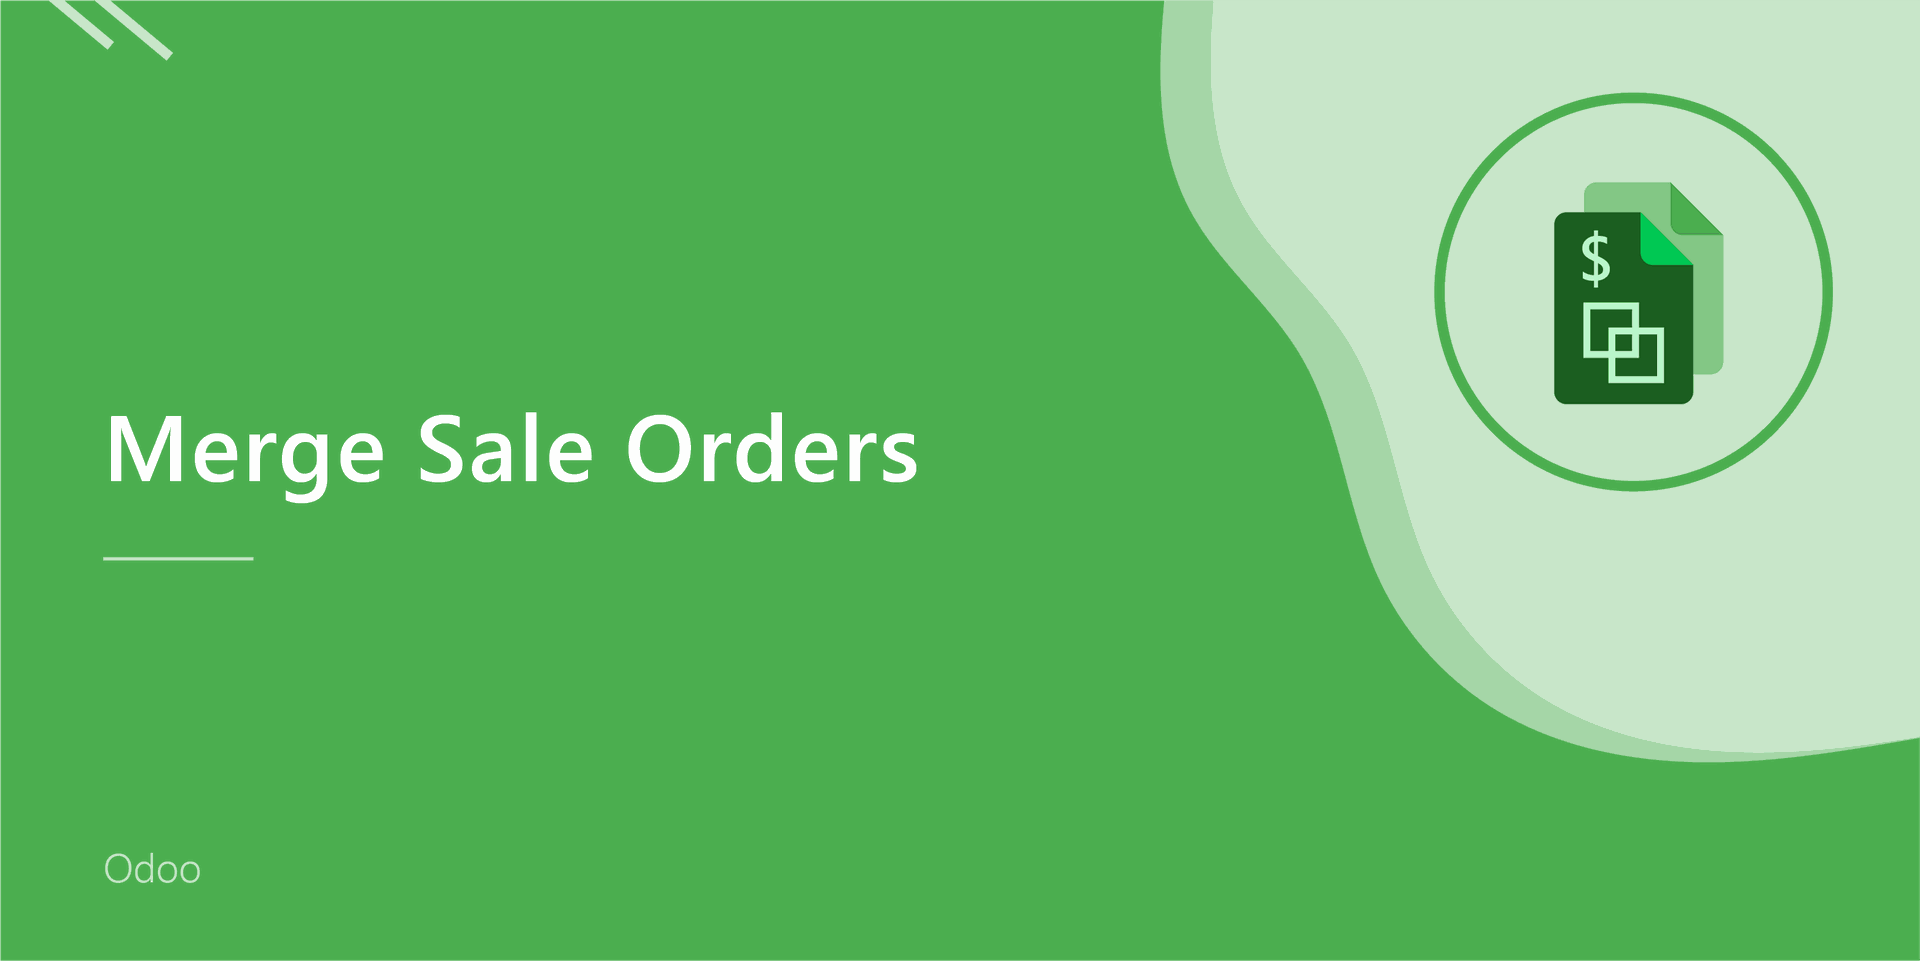 Merge Sale Orders
